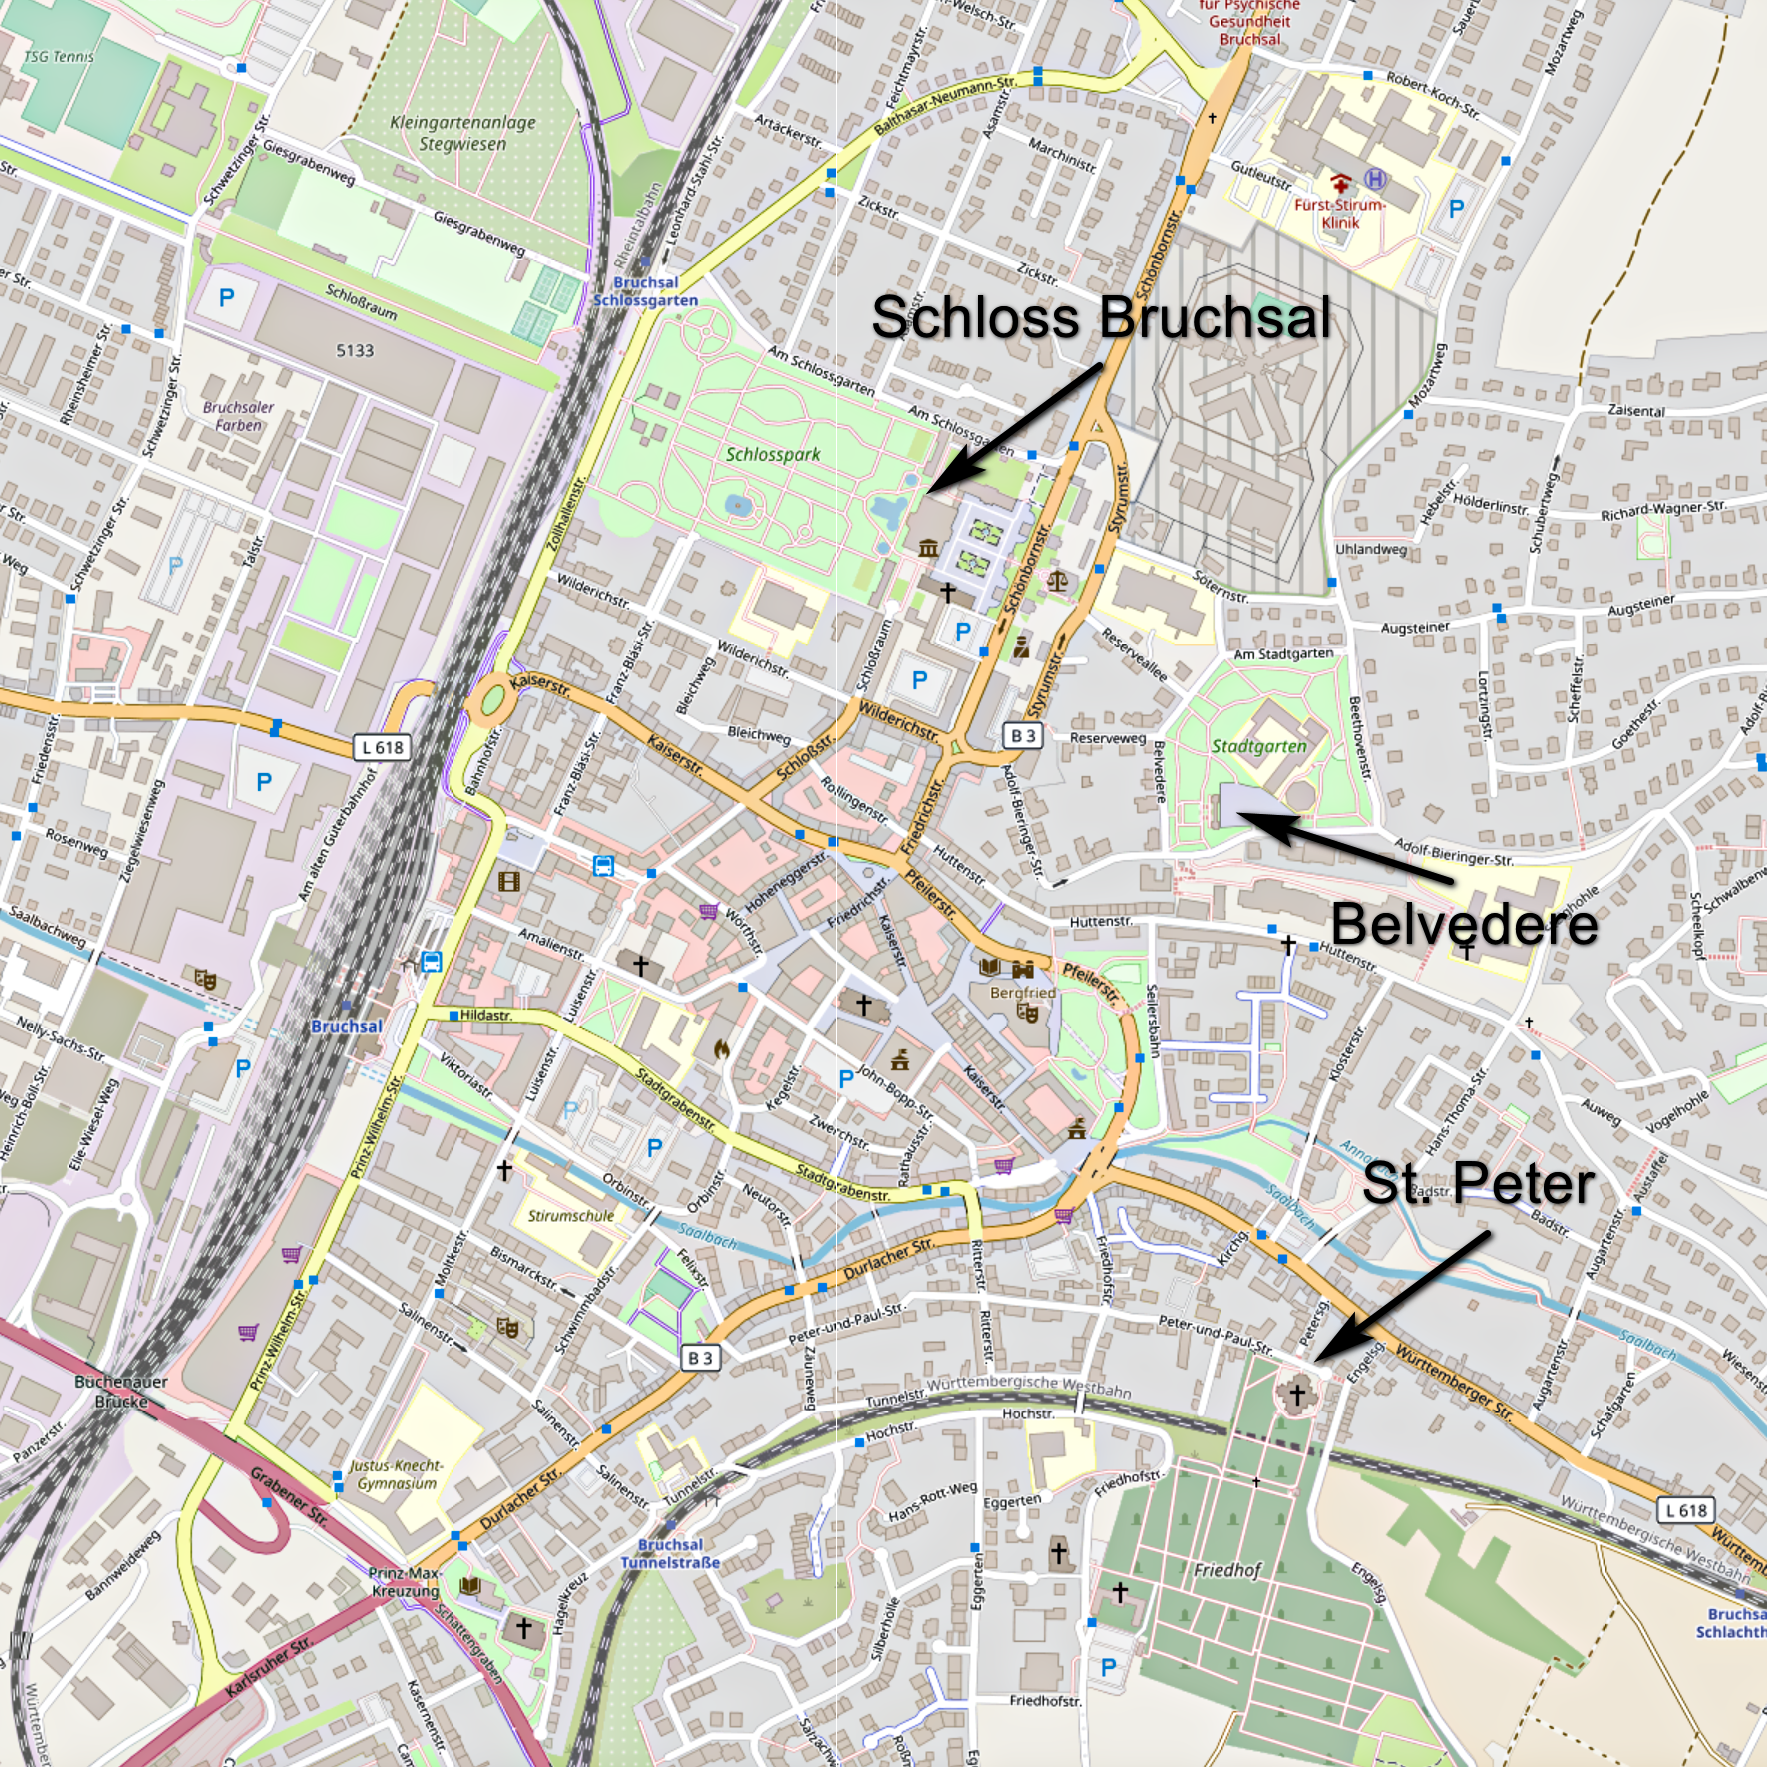 Karte von Bruchsal mit Hinweisen auf das Schloss Bruchsal, das Belvedere und die Kirche St. Peter (Karte: © OpenStreetMap-Mitwirkende; Lizenz: Namensnennung - Weitergabe unter gleichen Bedingungen 2.0 Generic (CC BY-SA 2.0); siehe: www.openstreetmap.org/copyright)